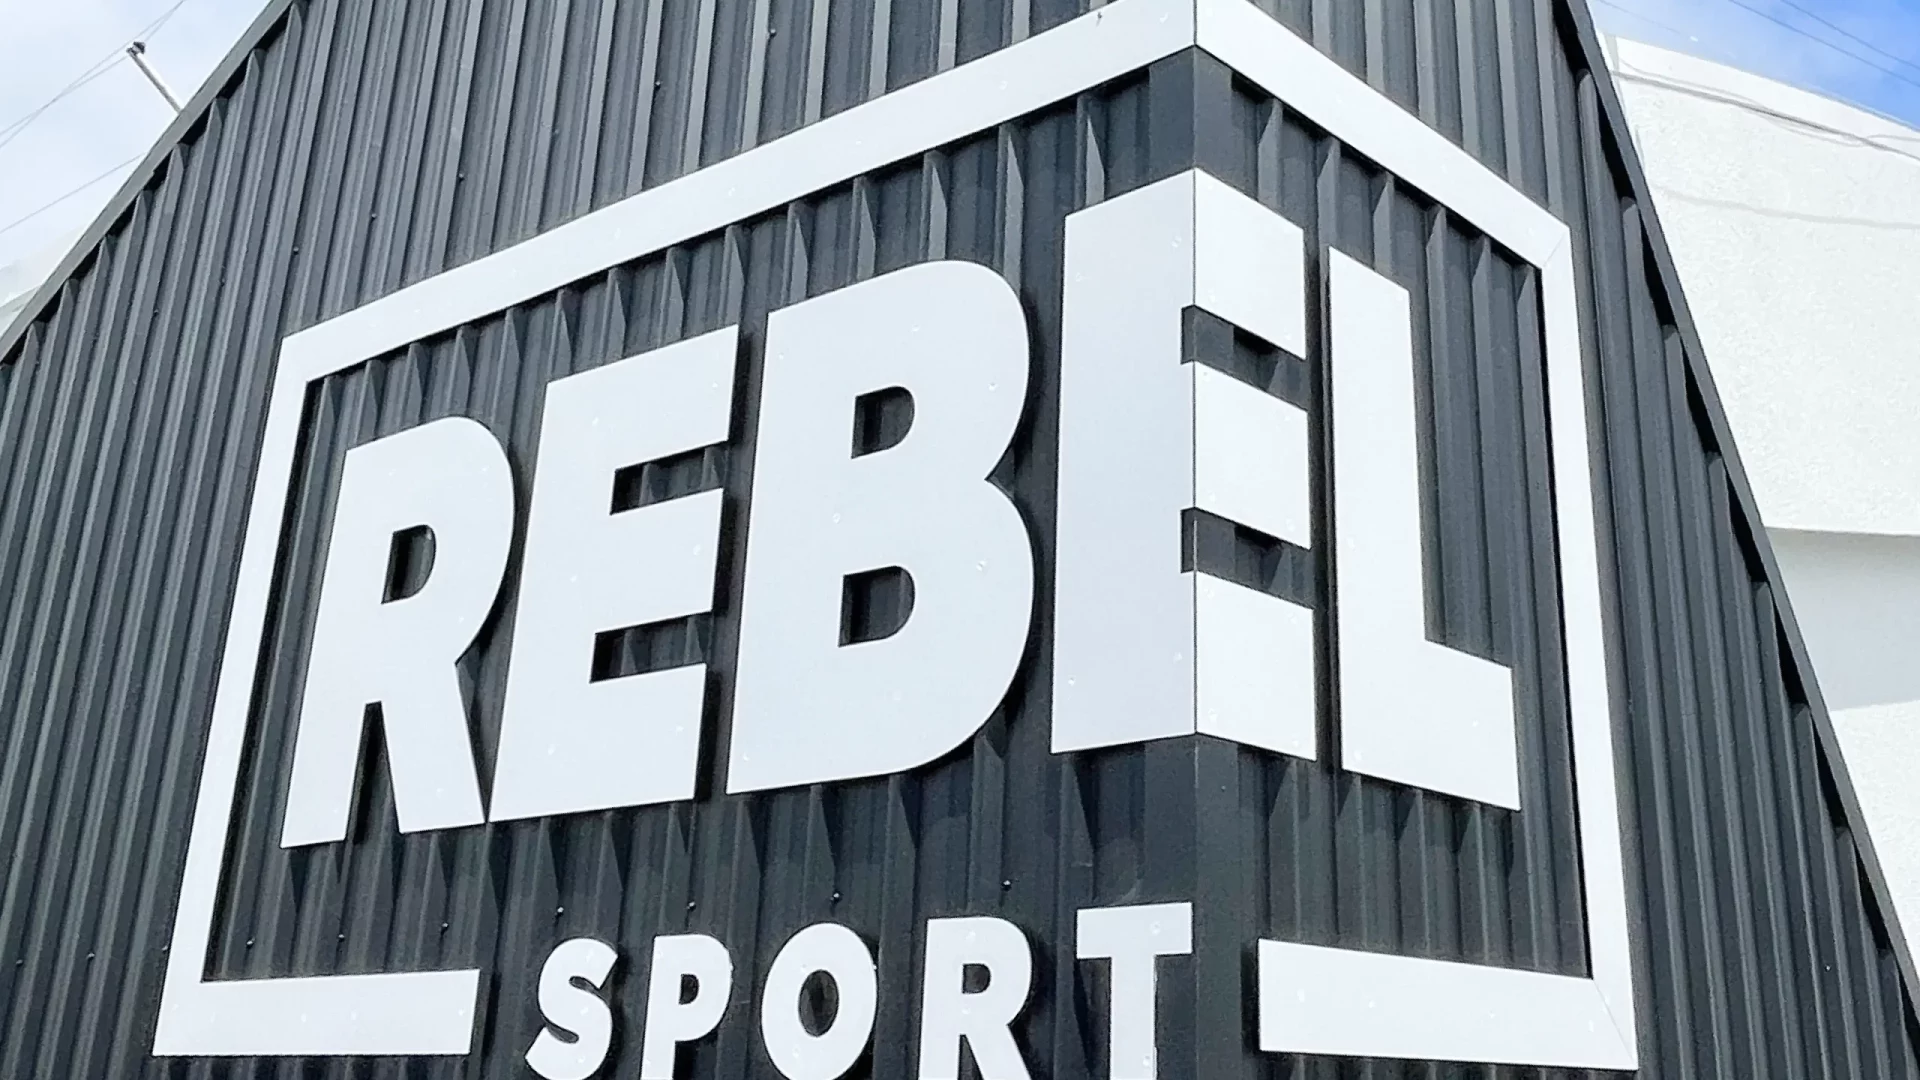 Rebel Sport building signage